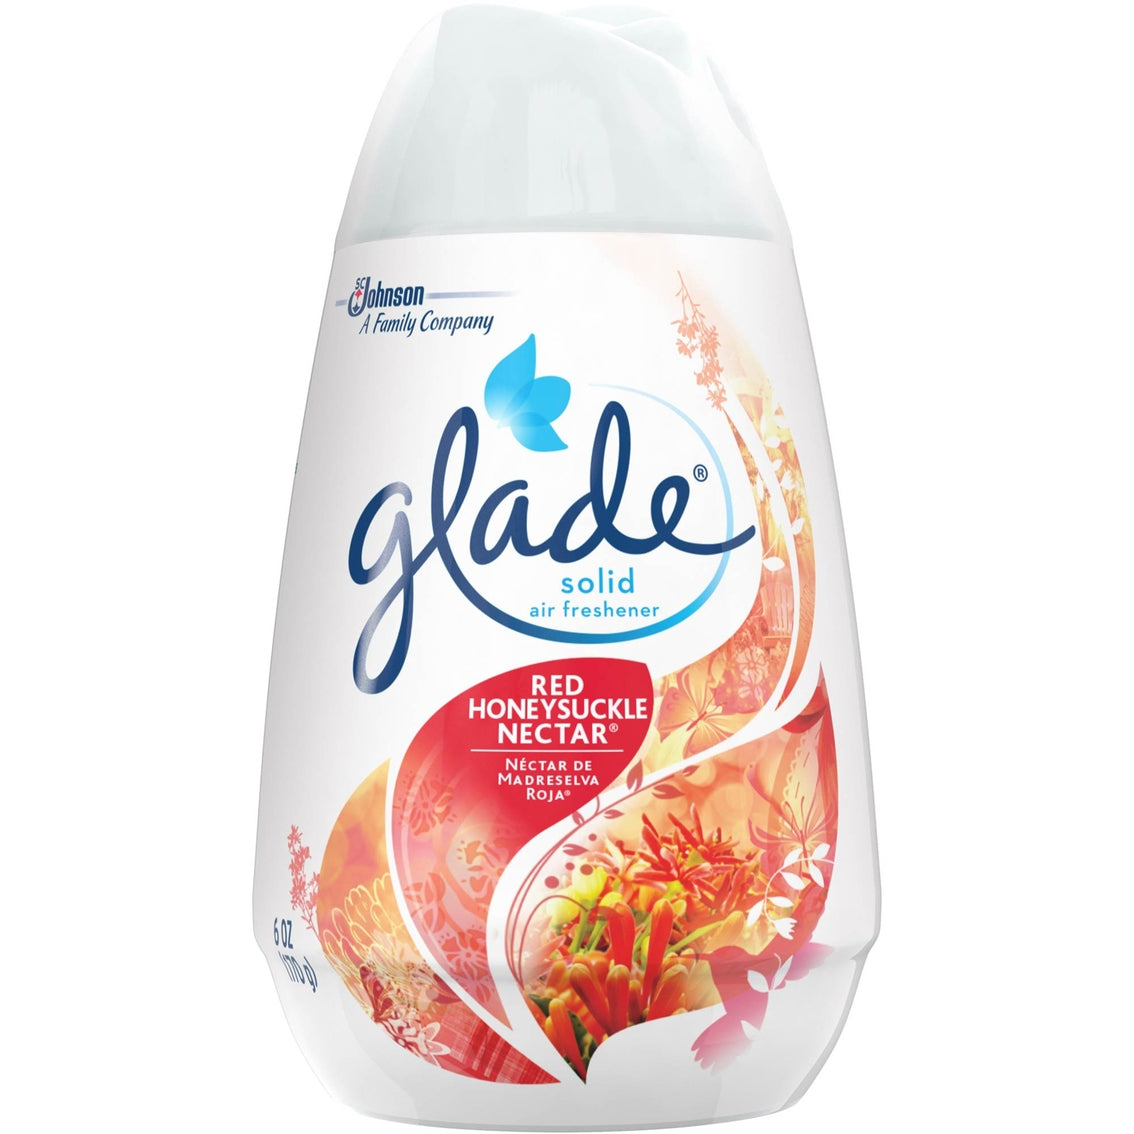 GLADE@Solid Air Freshner Red Honeysuckle Nectar - 6oz/12pk